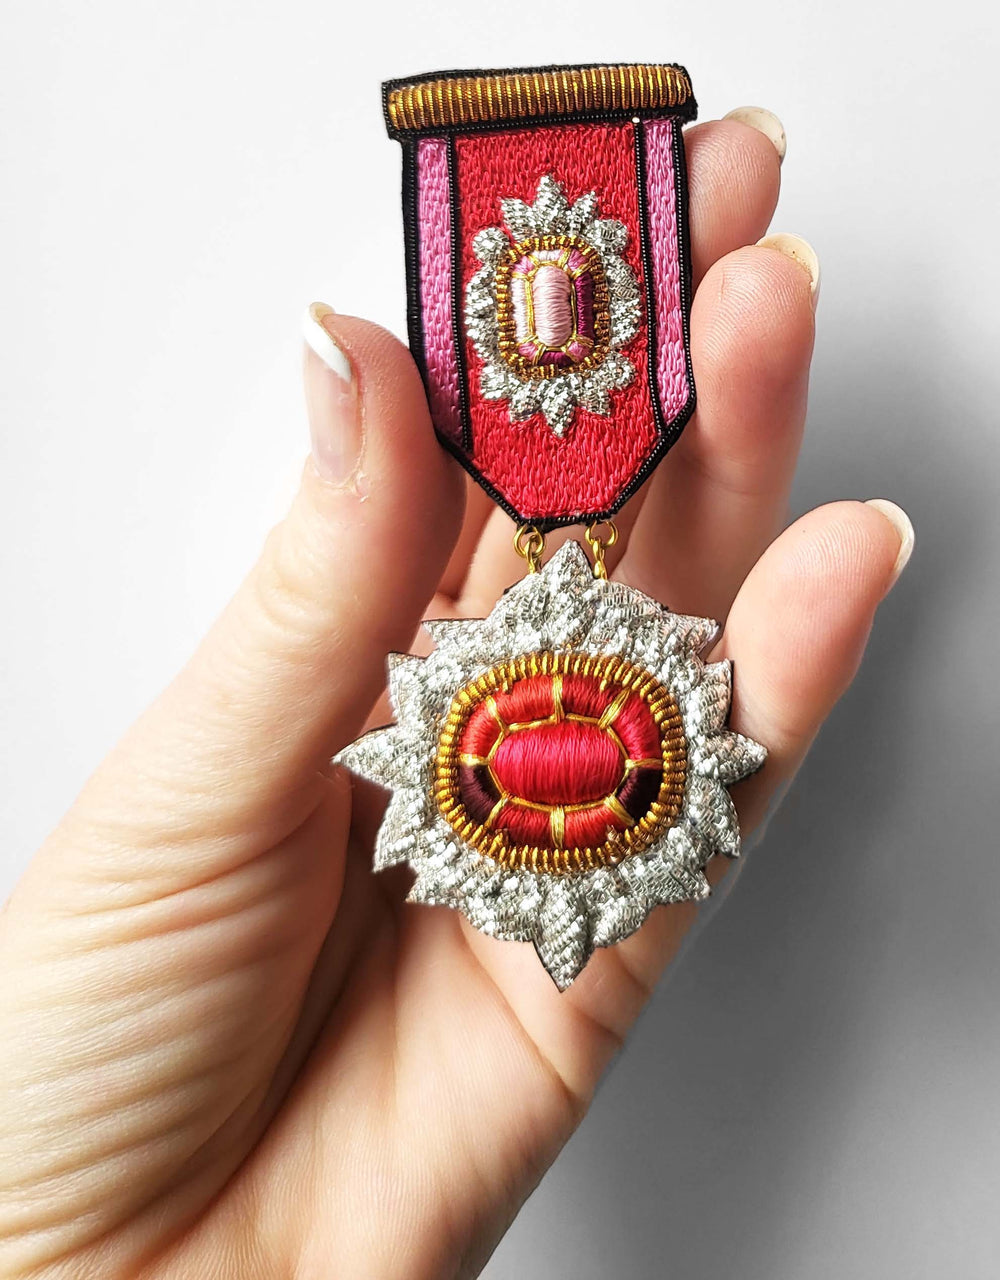 Médaille Youkounkoun rubis et grenat